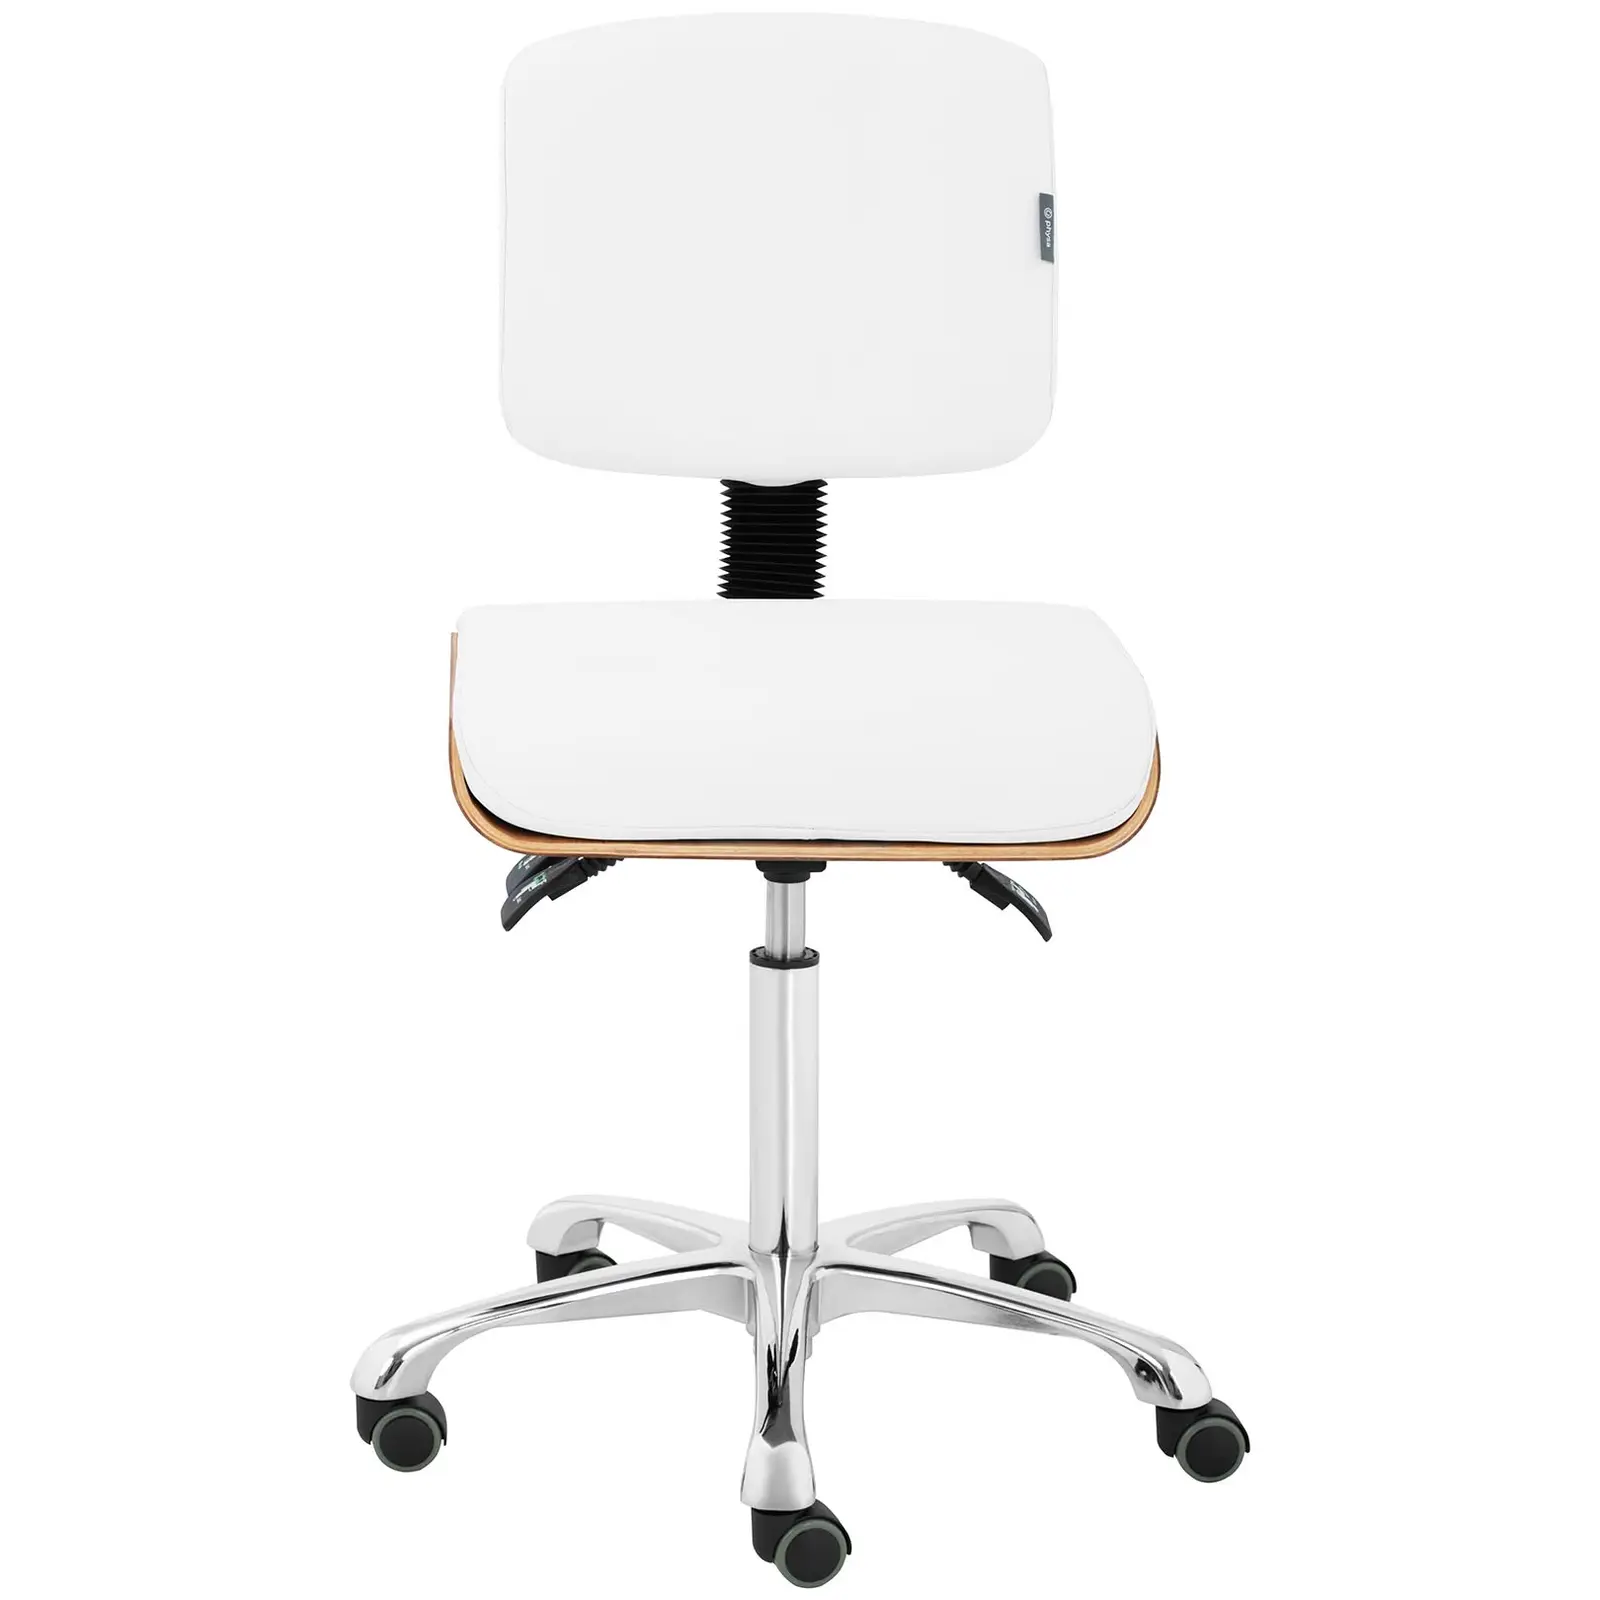 B-termék Gurulós szék háttámlával - 575 -775 mm - 160 kg - Természetes fa, Fehér